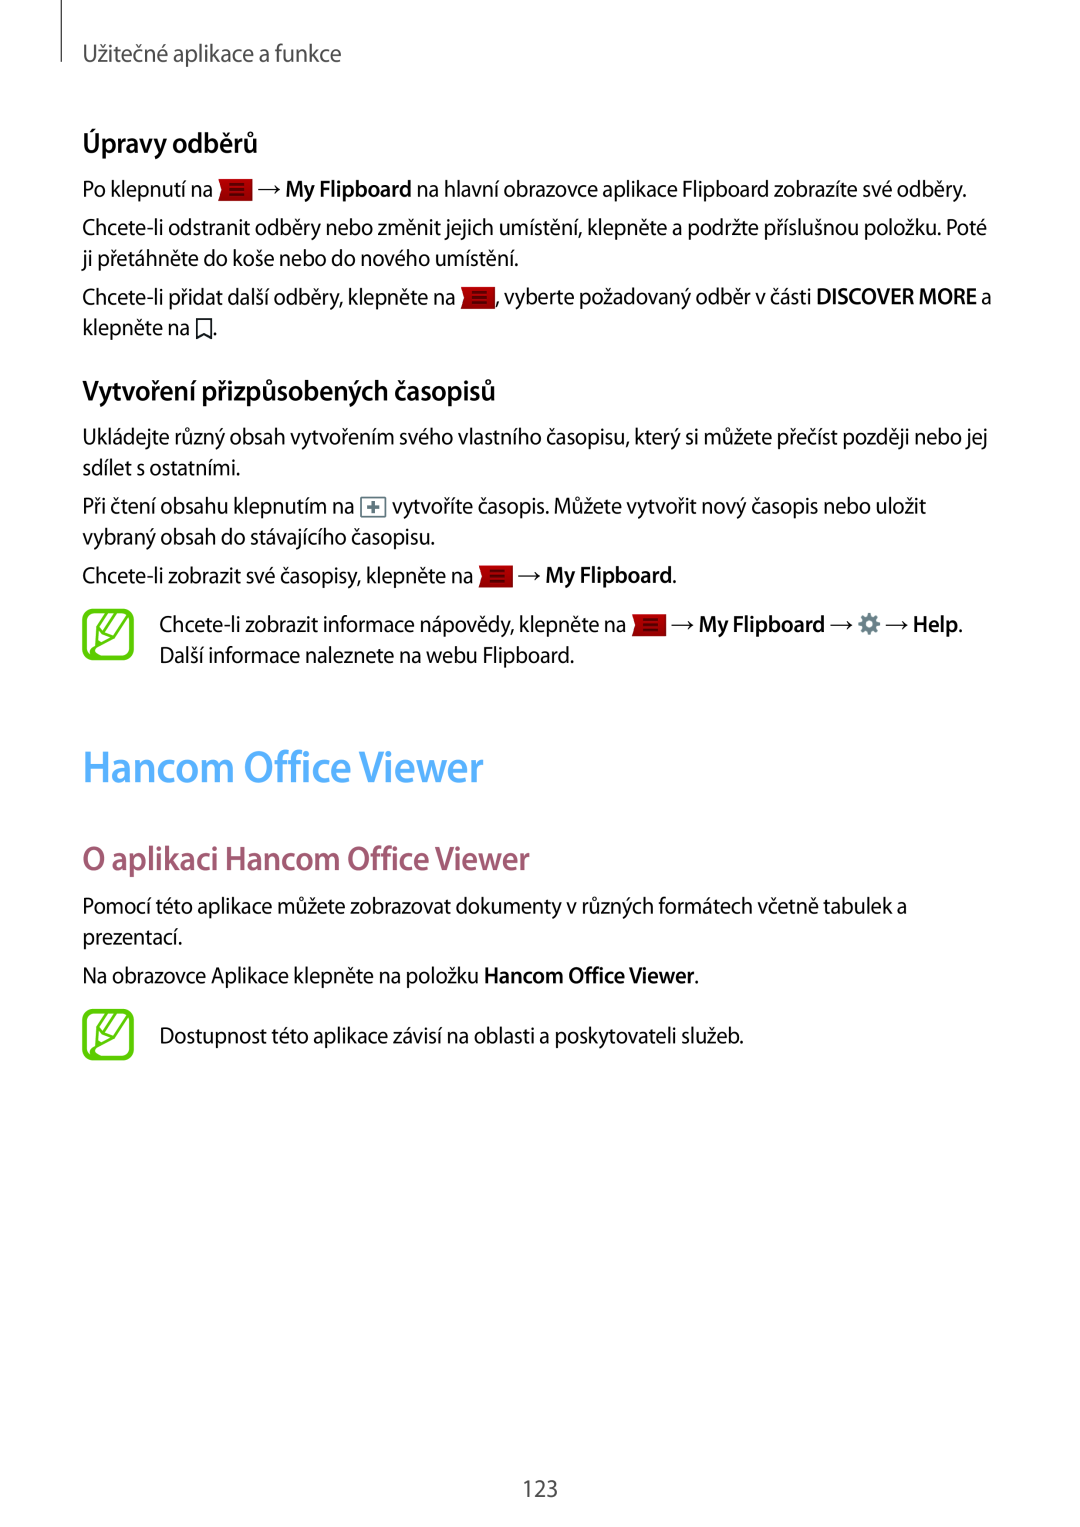 Samsung SM-T700NTSAXEZ manual O aplikaci Hancom Office Viewer, Úpravy odběrů, Vytvoření přizpůsobených časopisů 